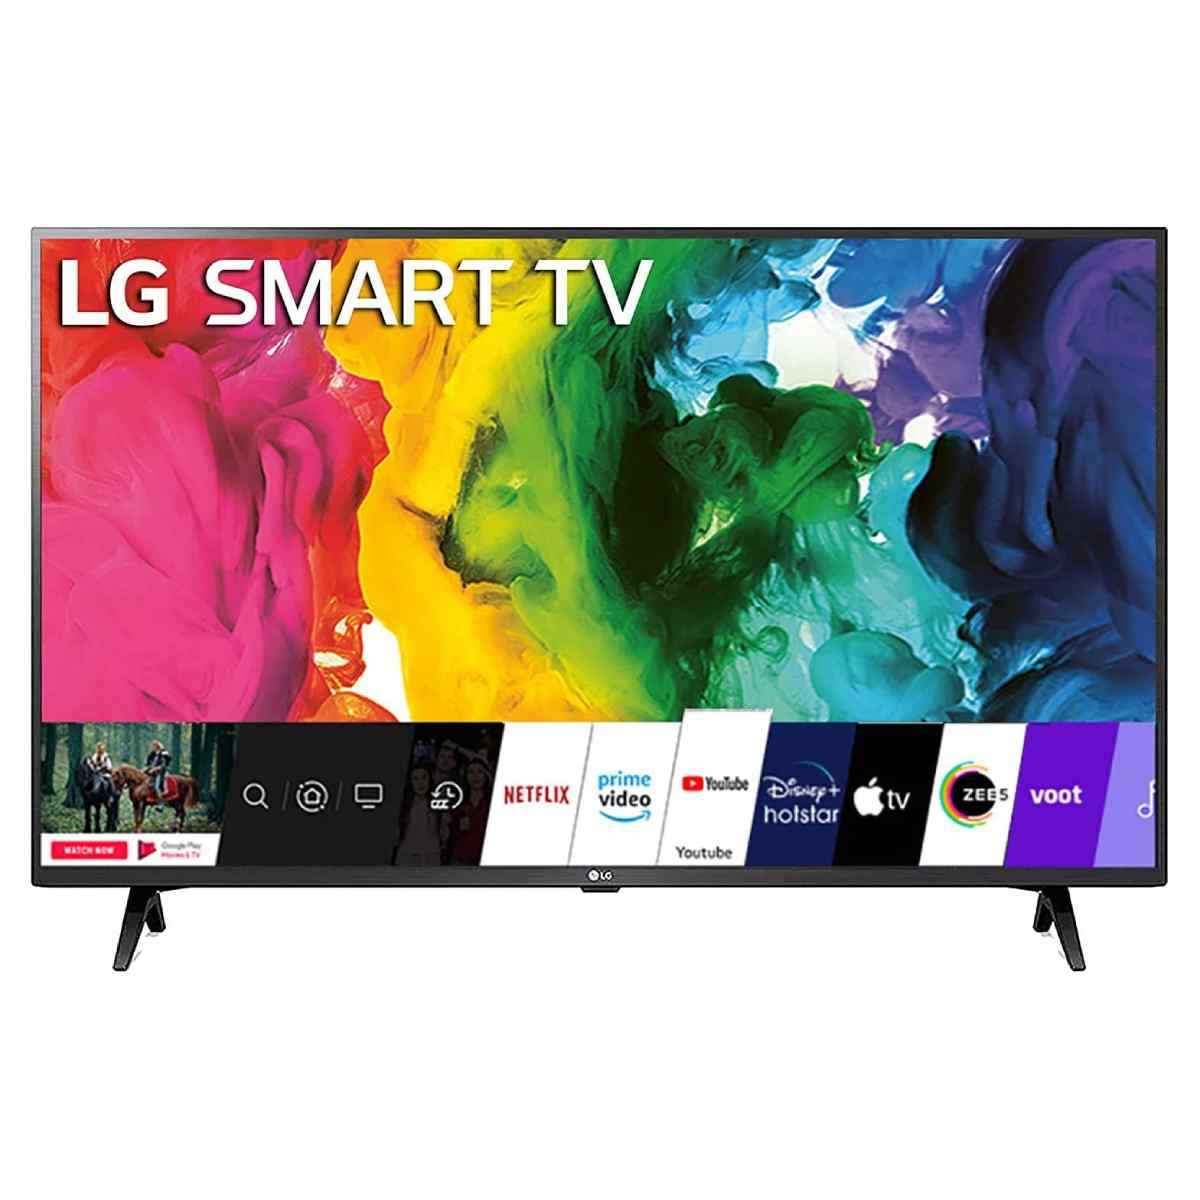 LG 43 inches Full HD LED Smart TV (43LM5650PTA)